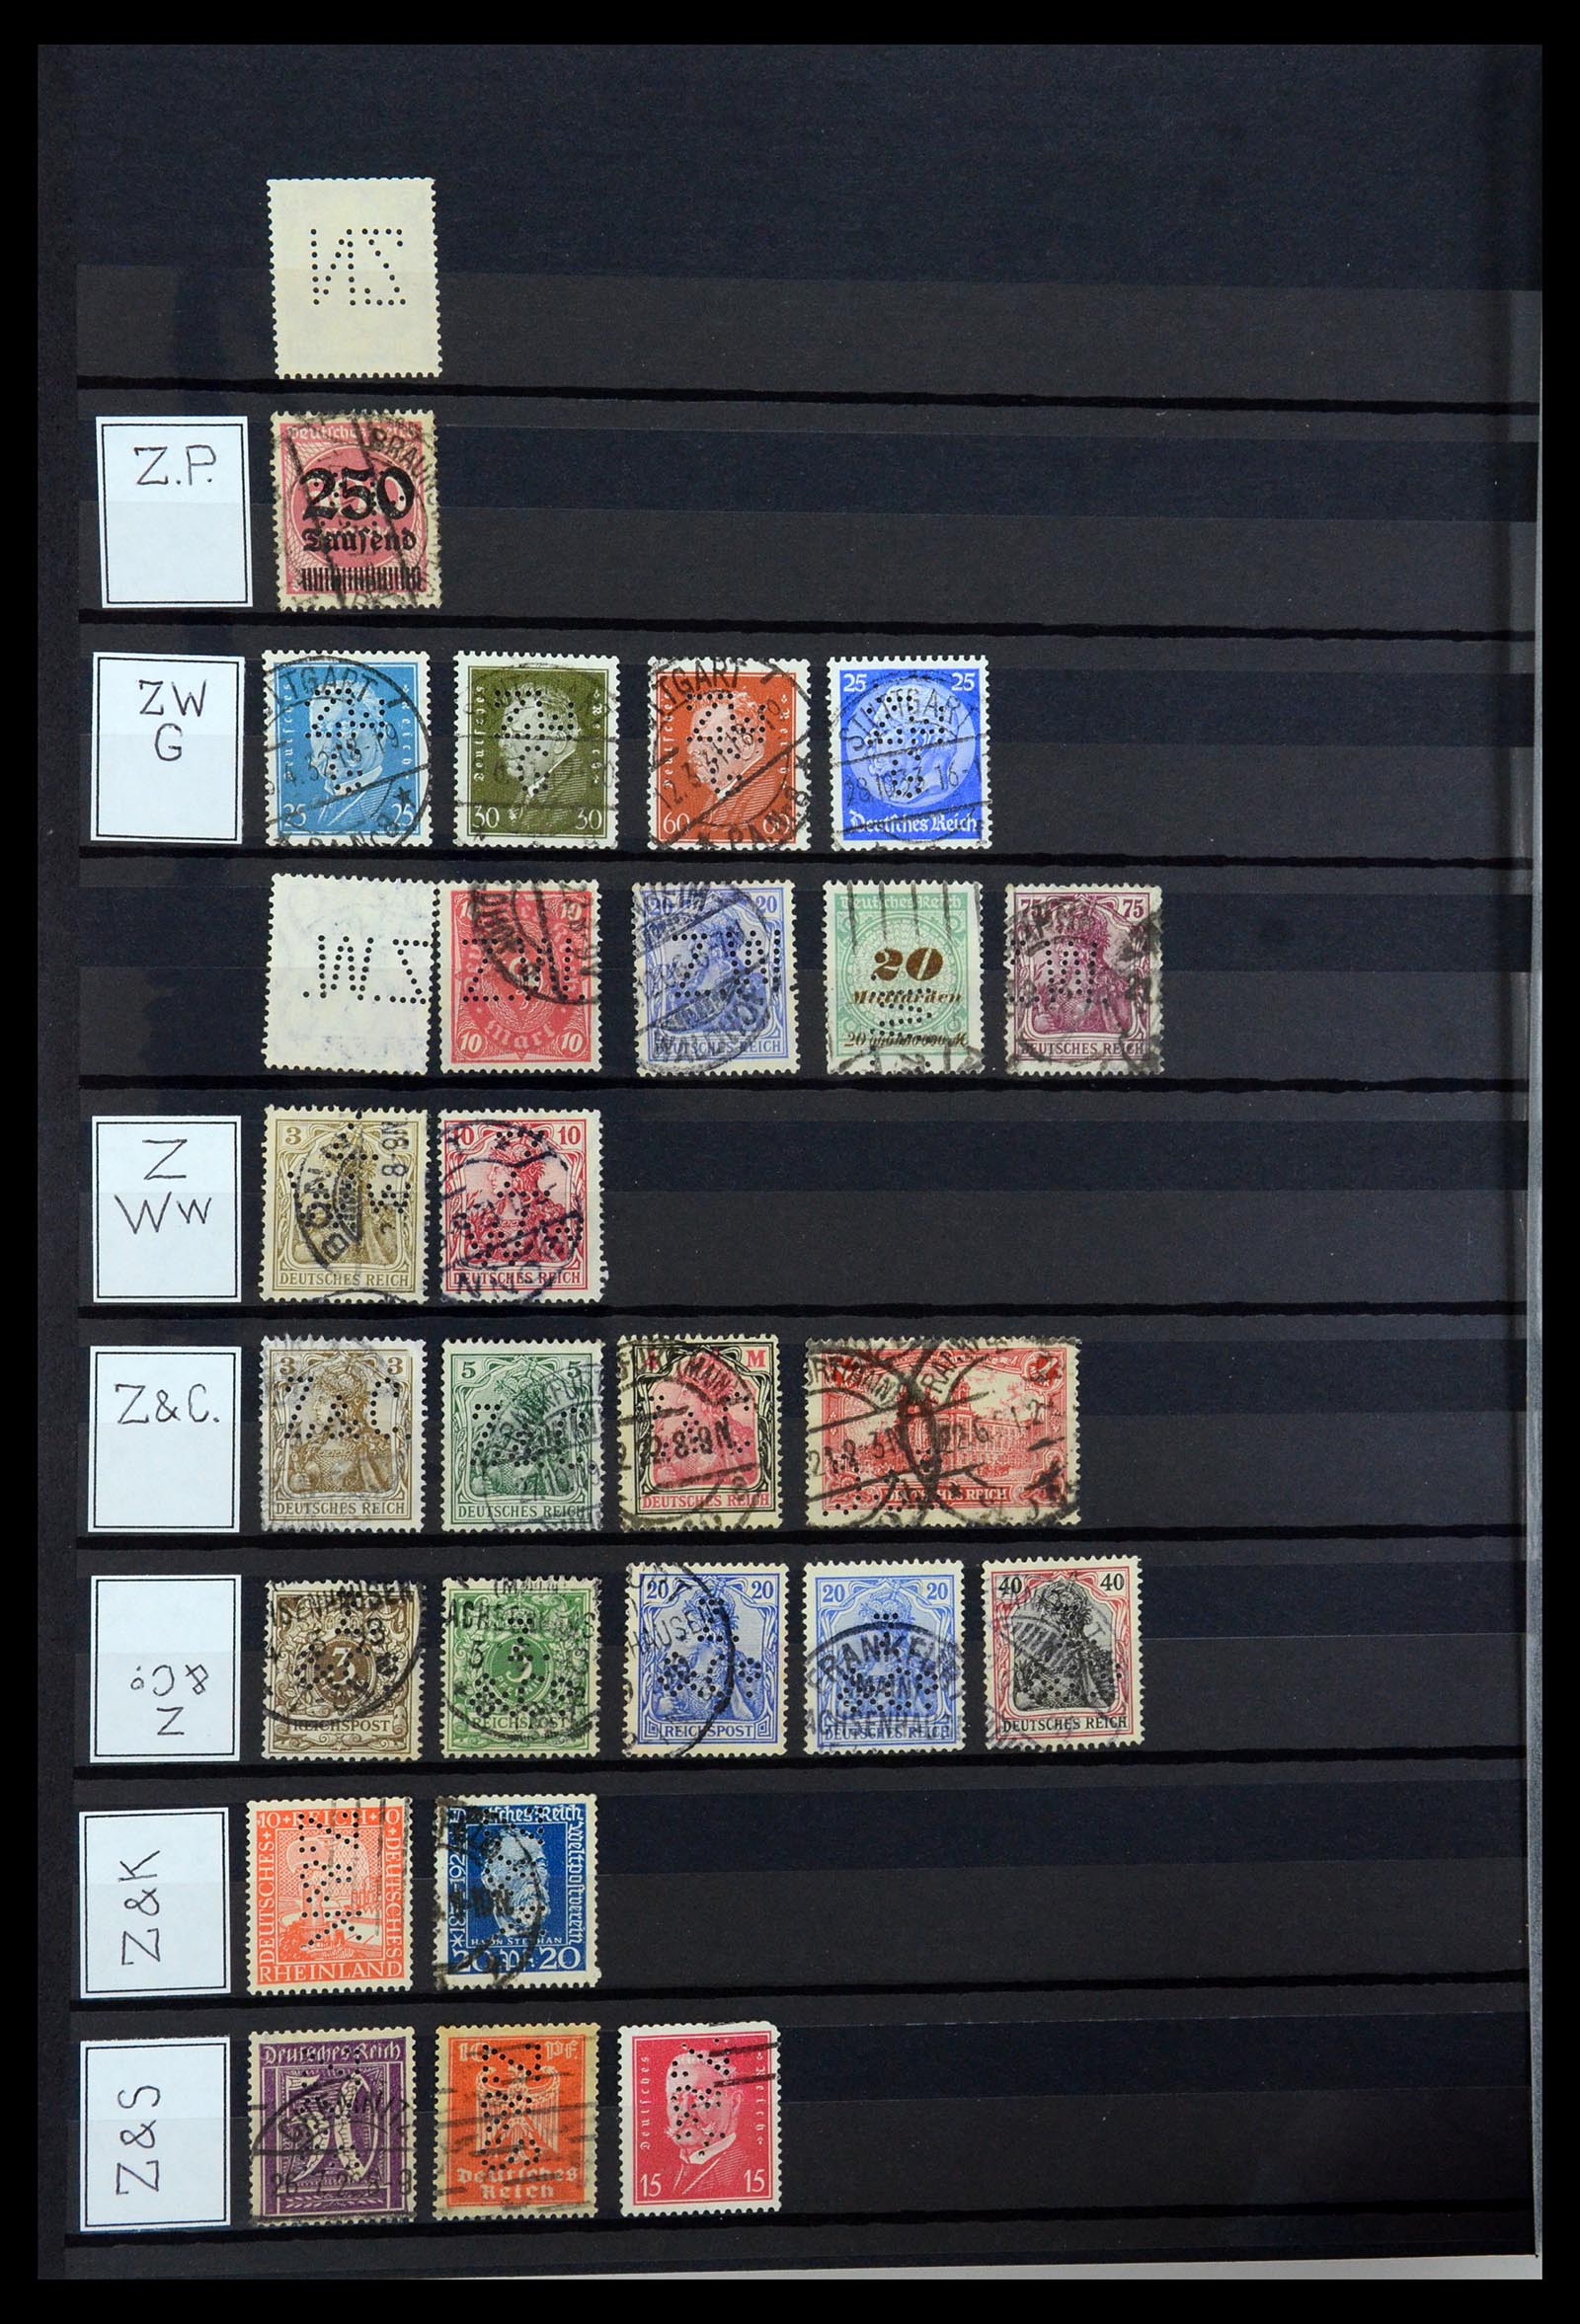 36405 349 - Stamp collection 36405 German Reich perfins 1880-1945.